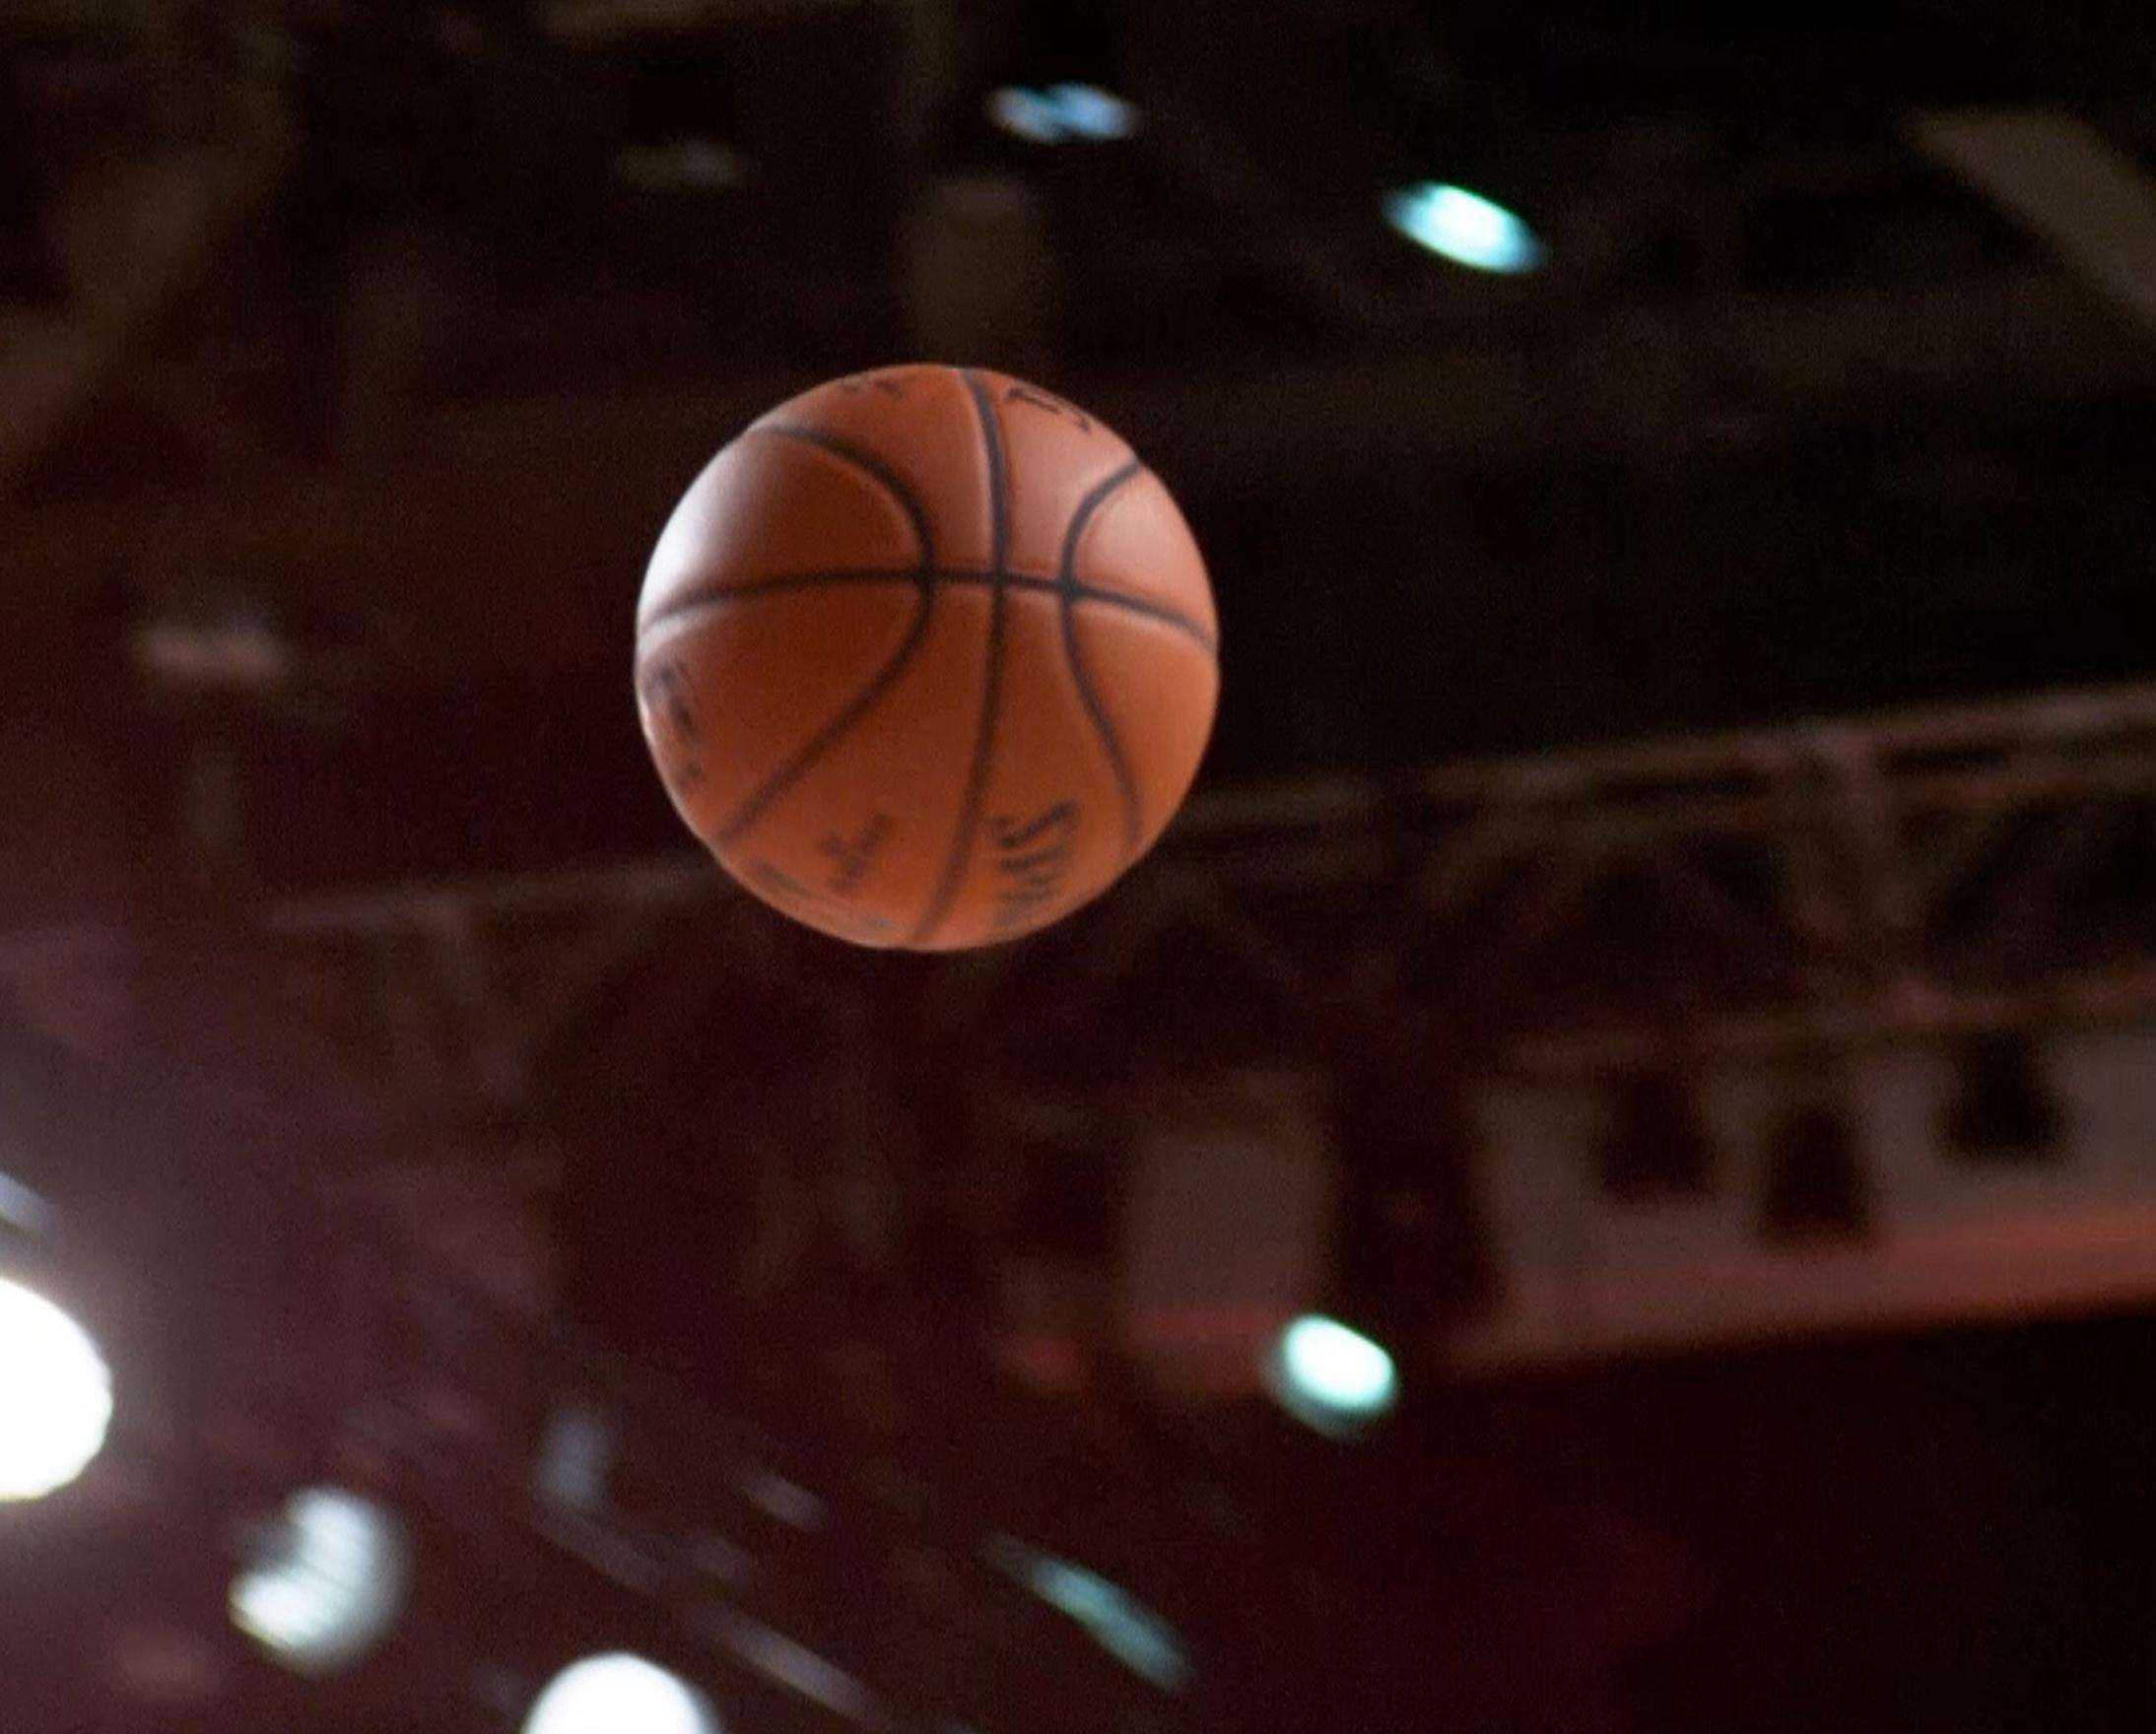 A basketball flies through the air